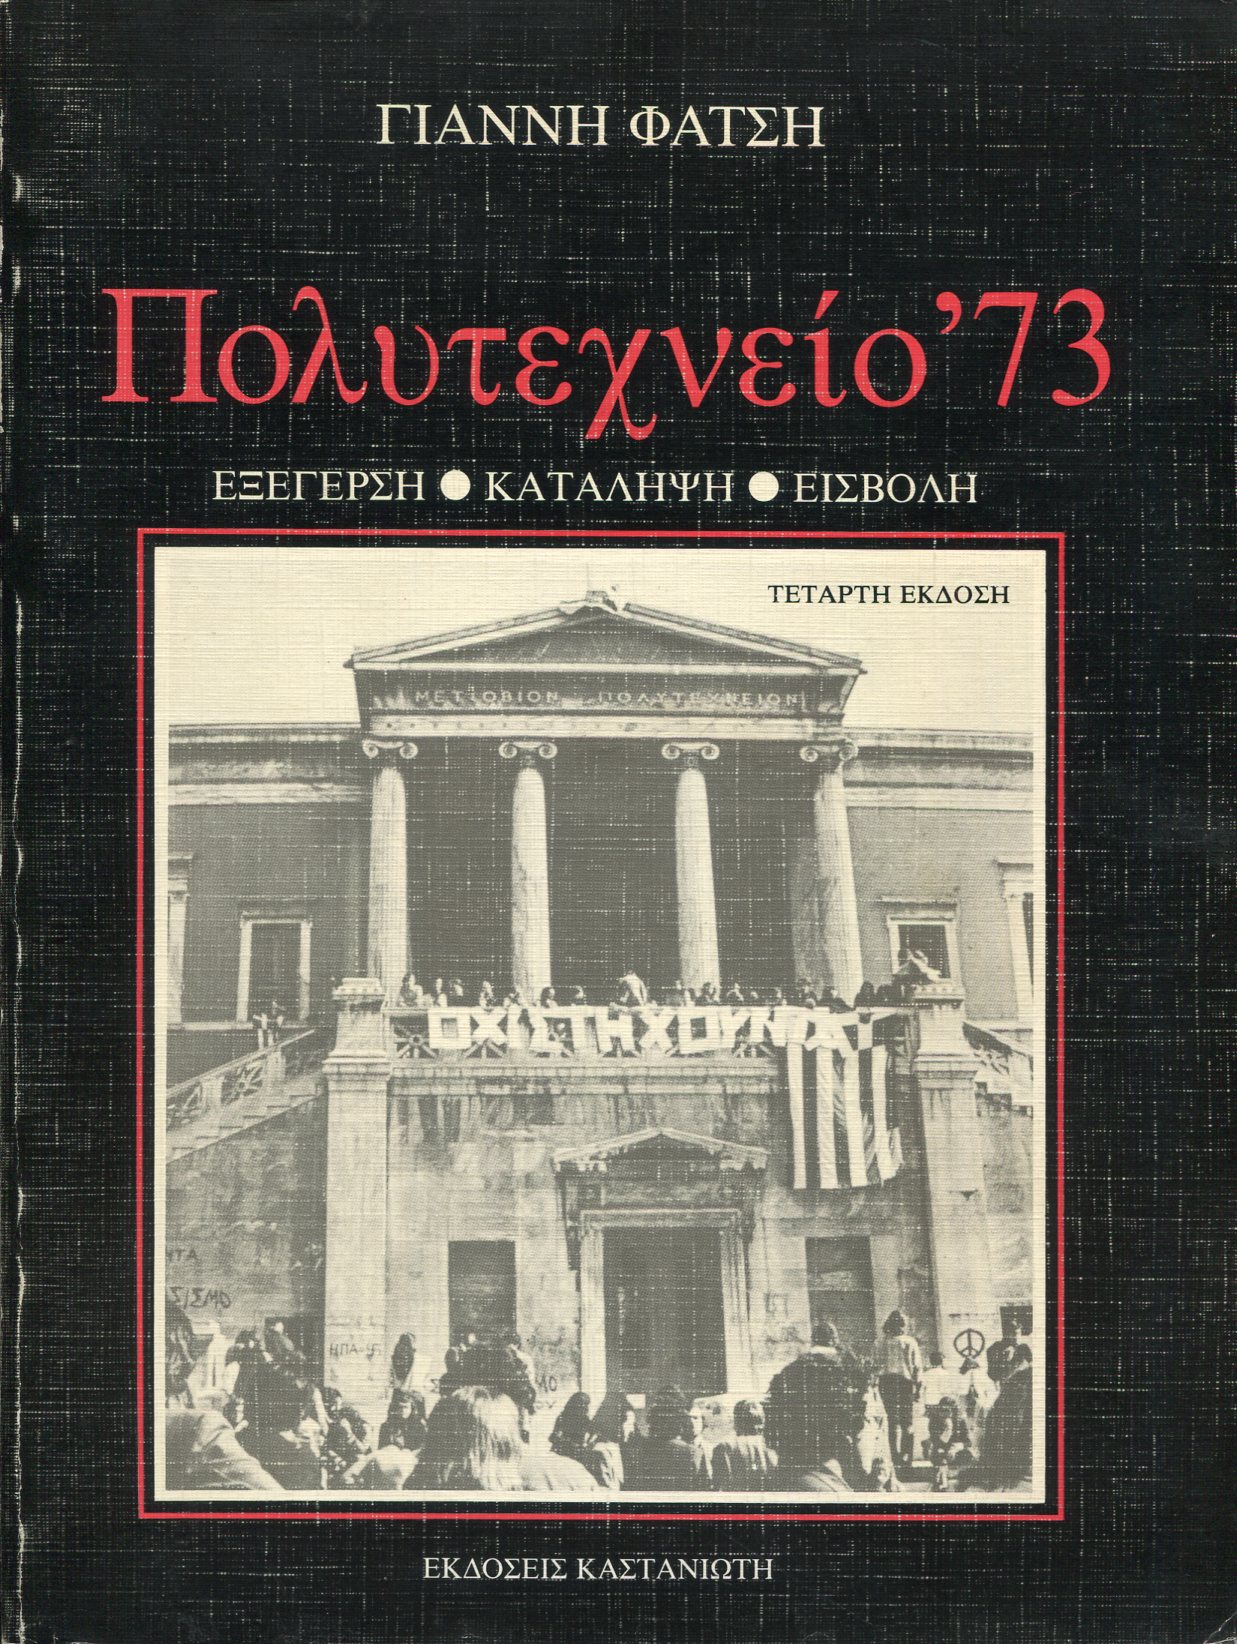 ΠΟΛΥΤΕΧΝΕΙΟ '73